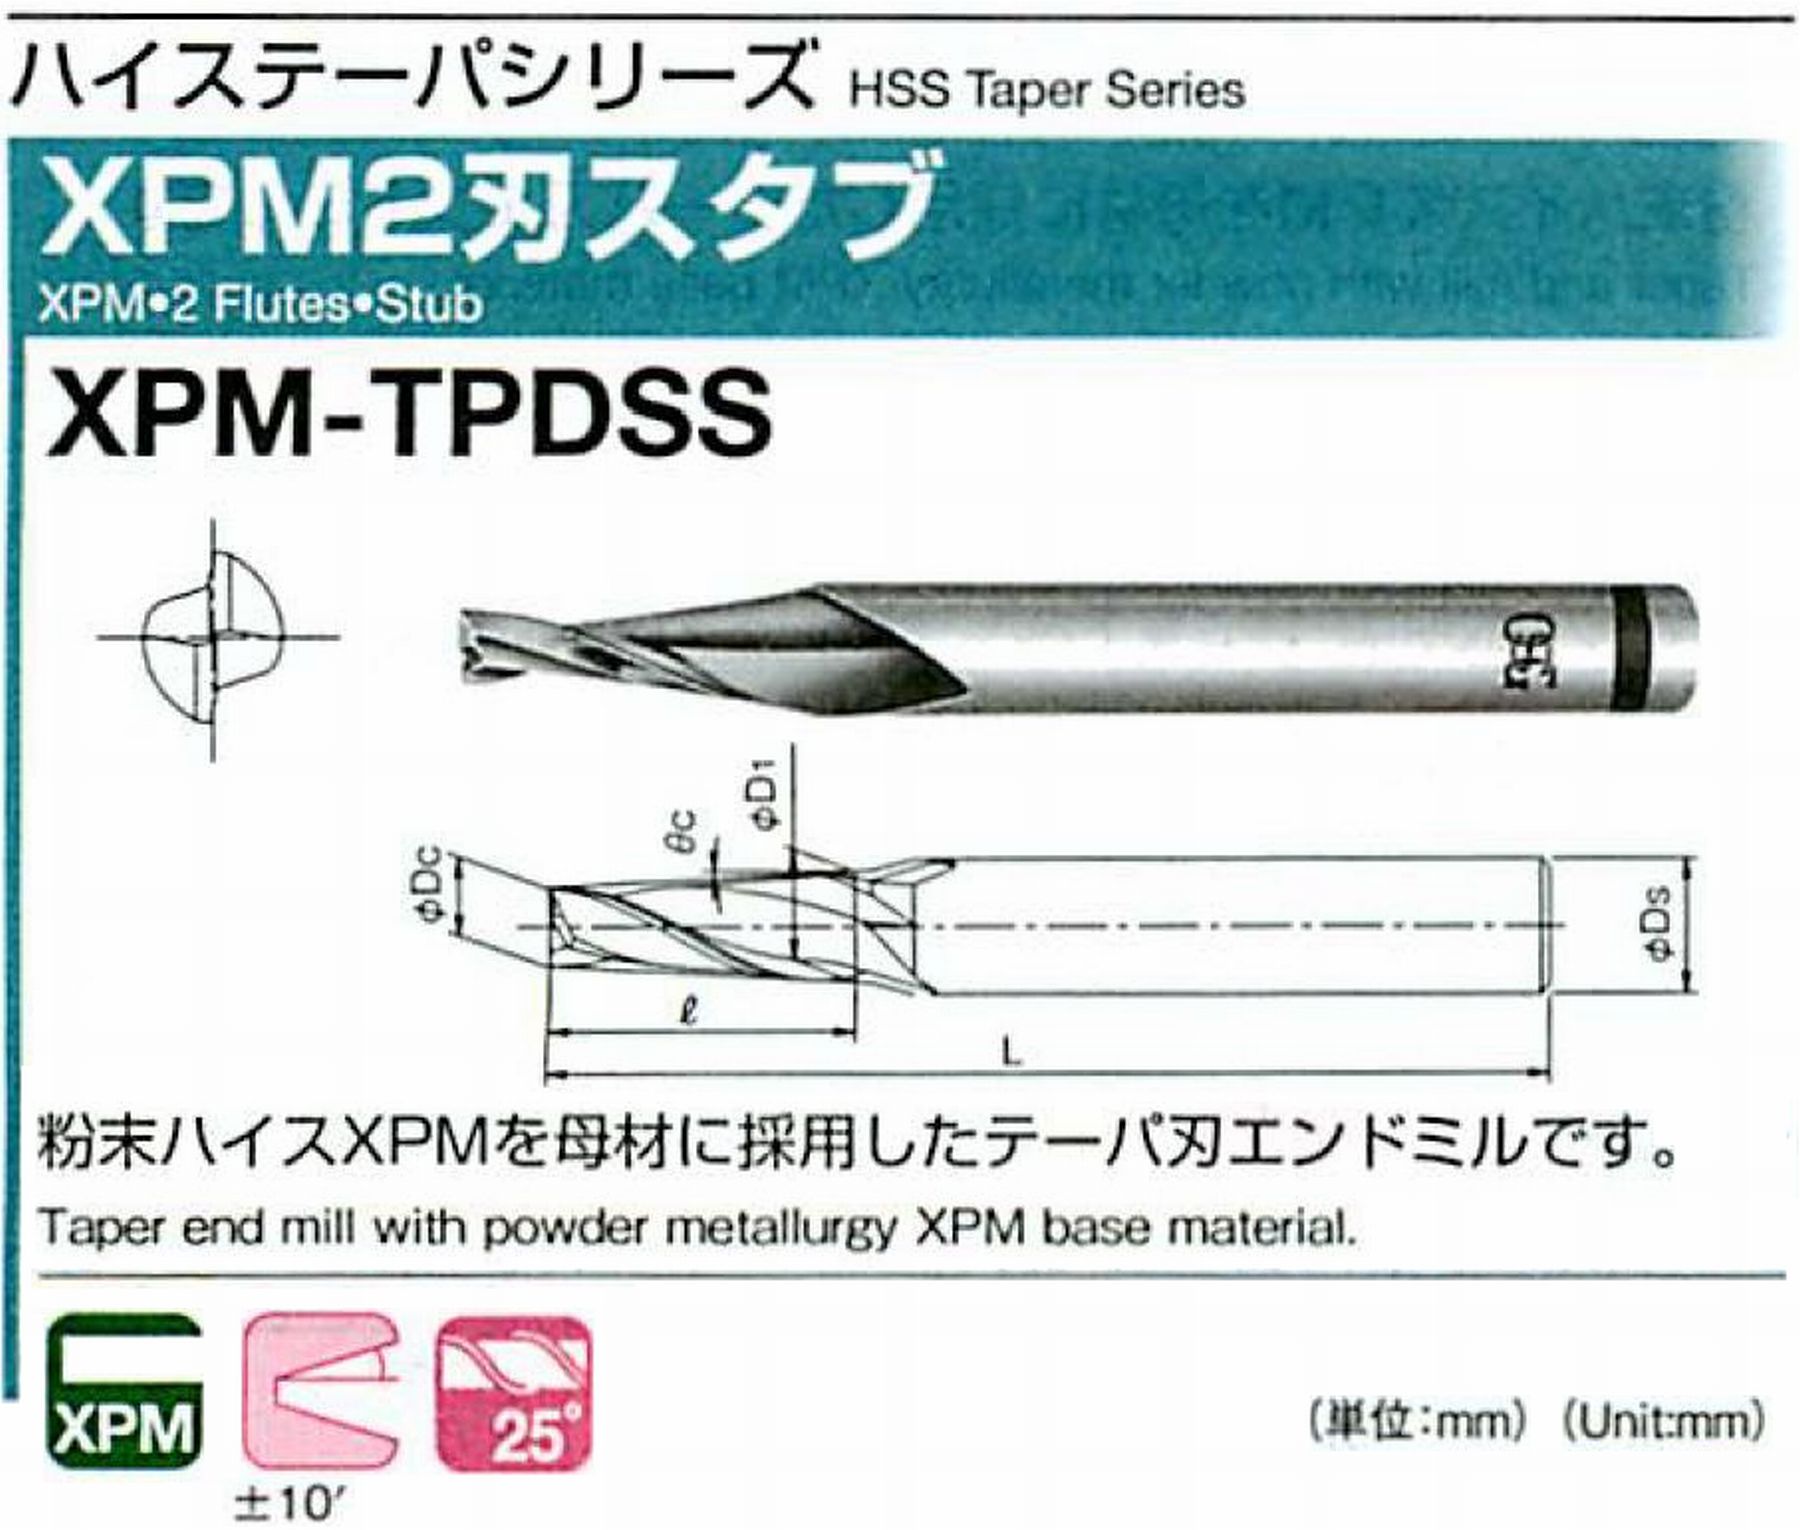 オーエスジー/OSG XPM2刃スタブ XPM-TPDSS 外径×刃部テーパ半角2×1° 全長51 刃長7 シャンク径6mm 大端径2.24